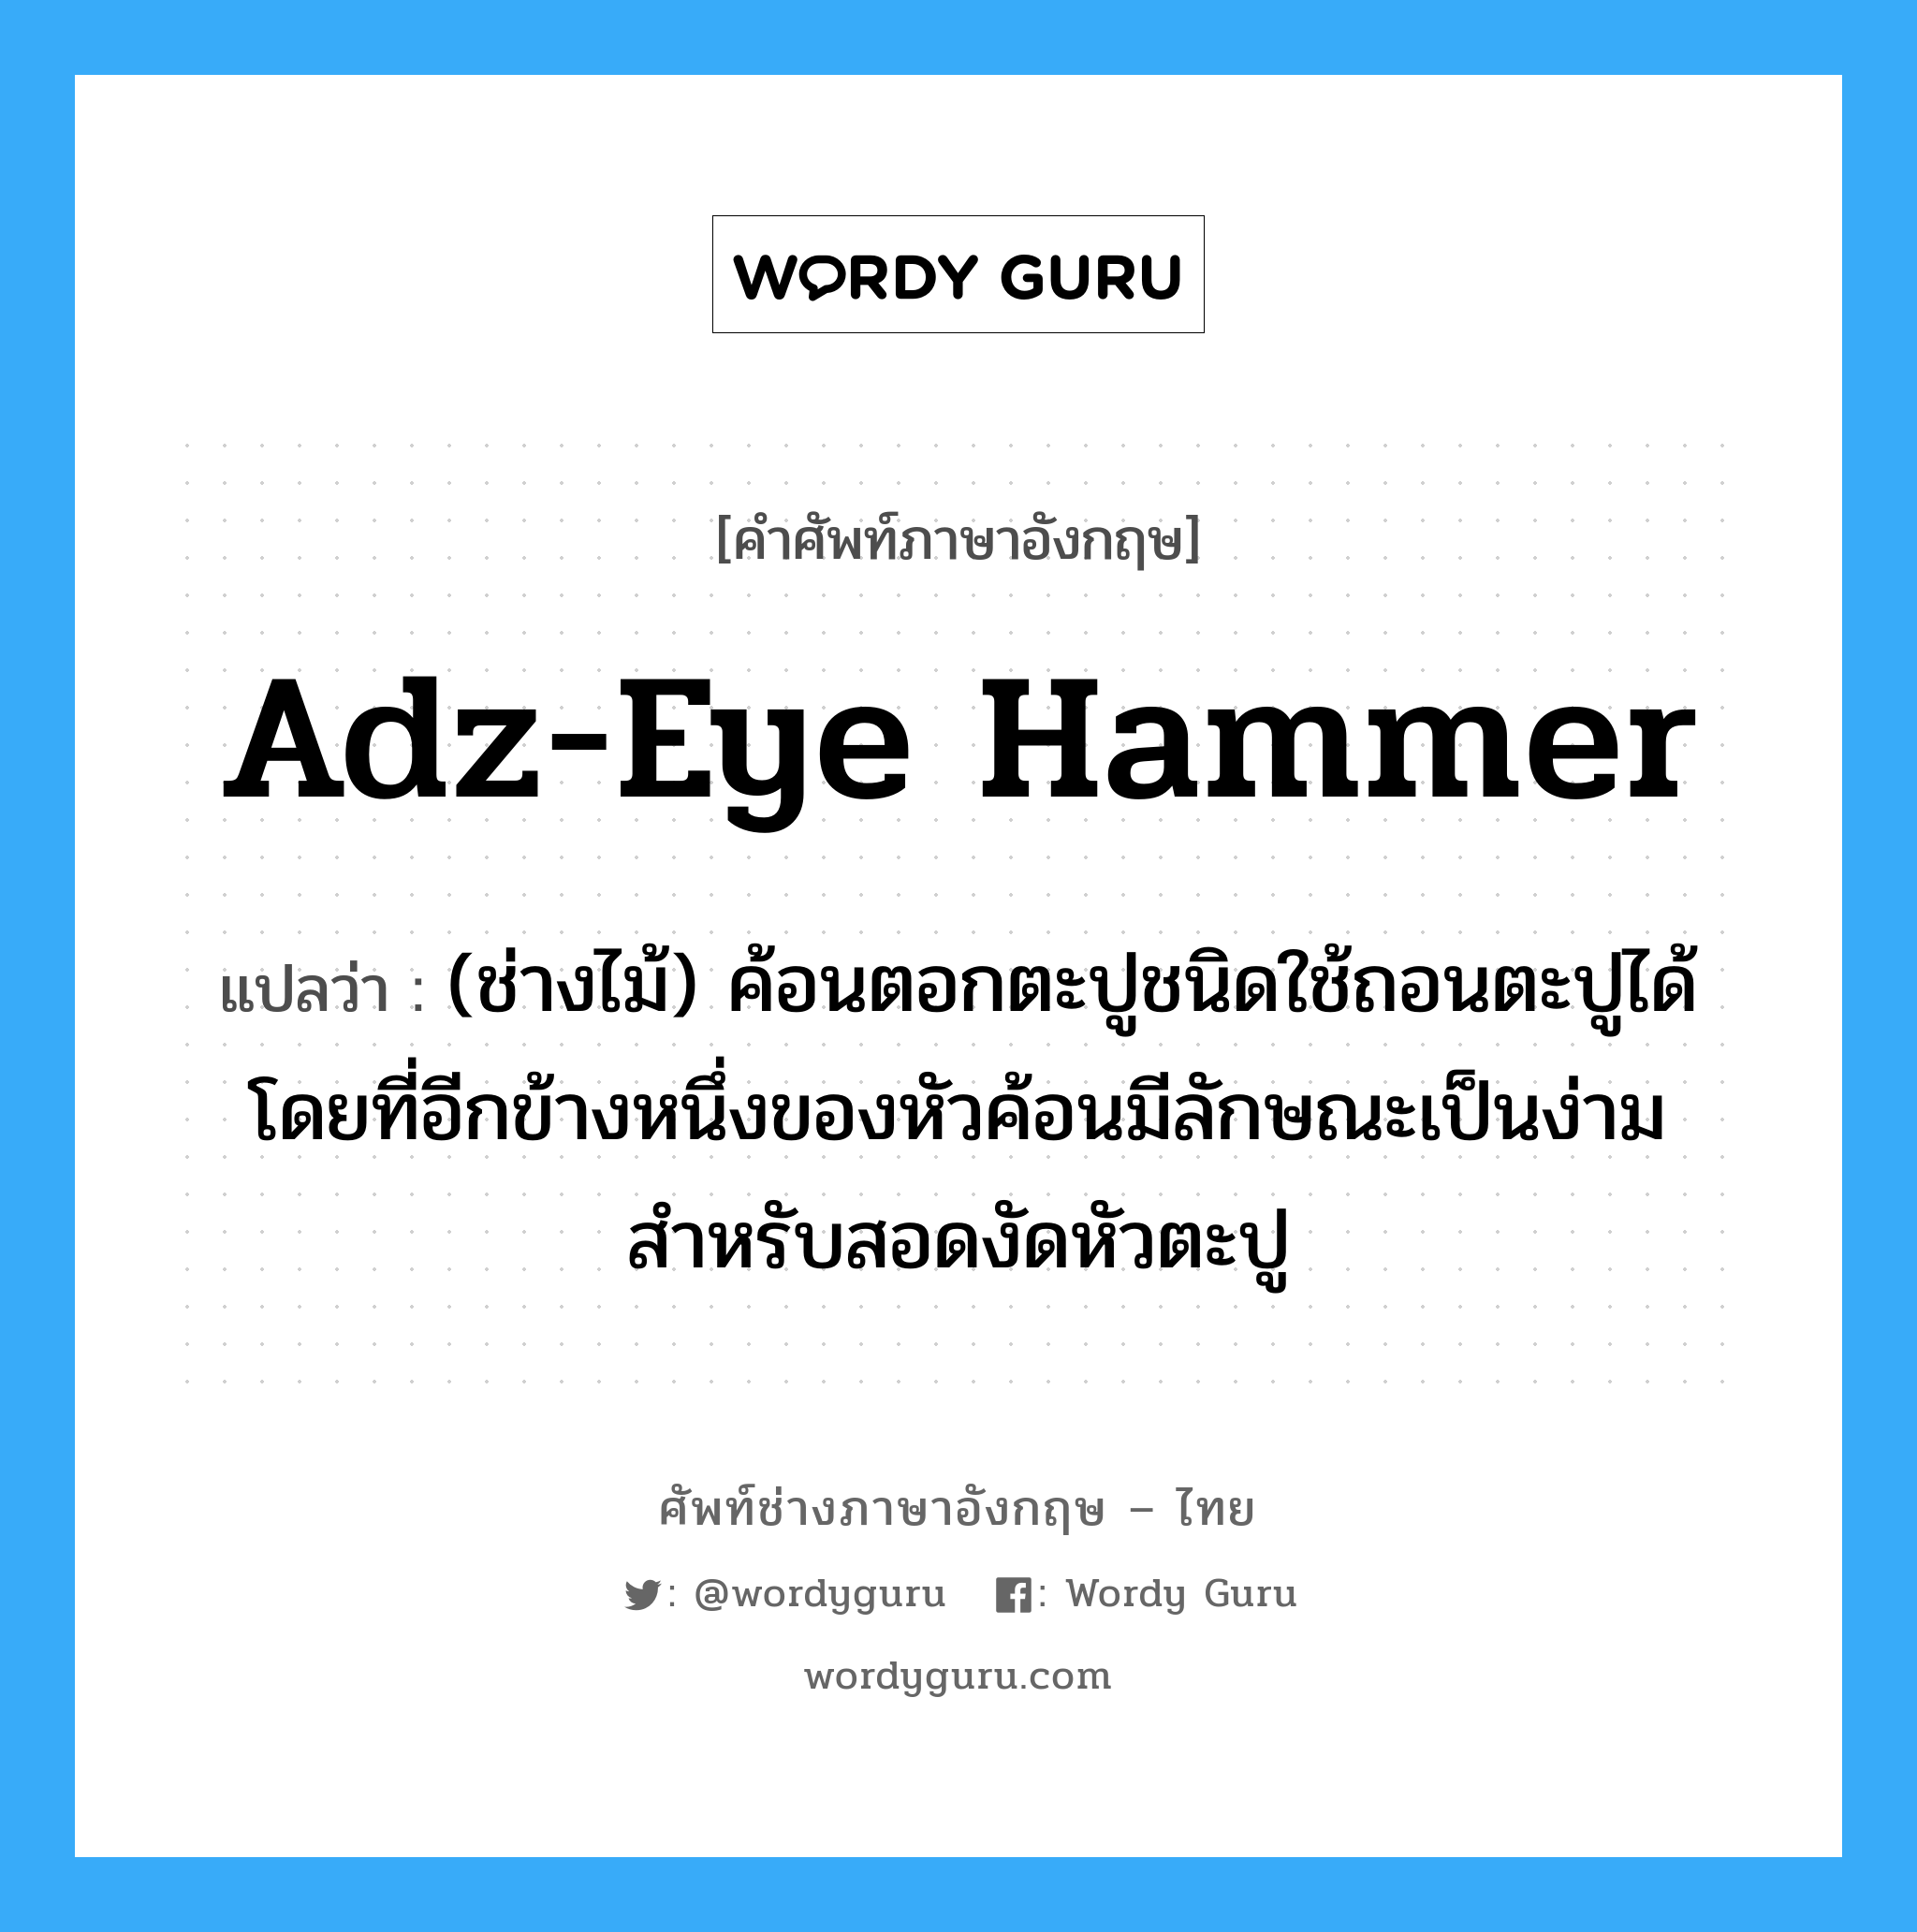 adz-eye hammer แปลว่า?, คำศัพท์ช่างภาษาอังกฤษ - ไทย adz-eye hammer คำศัพท์ภาษาอังกฤษ adz-eye hammer แปลว่า (ช่างไม้) ค้อนตอกตะปูชนิดใช้ถอนตะปูได้ โดยที่อีกข้างหนึ่งของหัวค้อนมีลักษณะเป็นง่าม สำหรับสอดงัดหัวตะปู